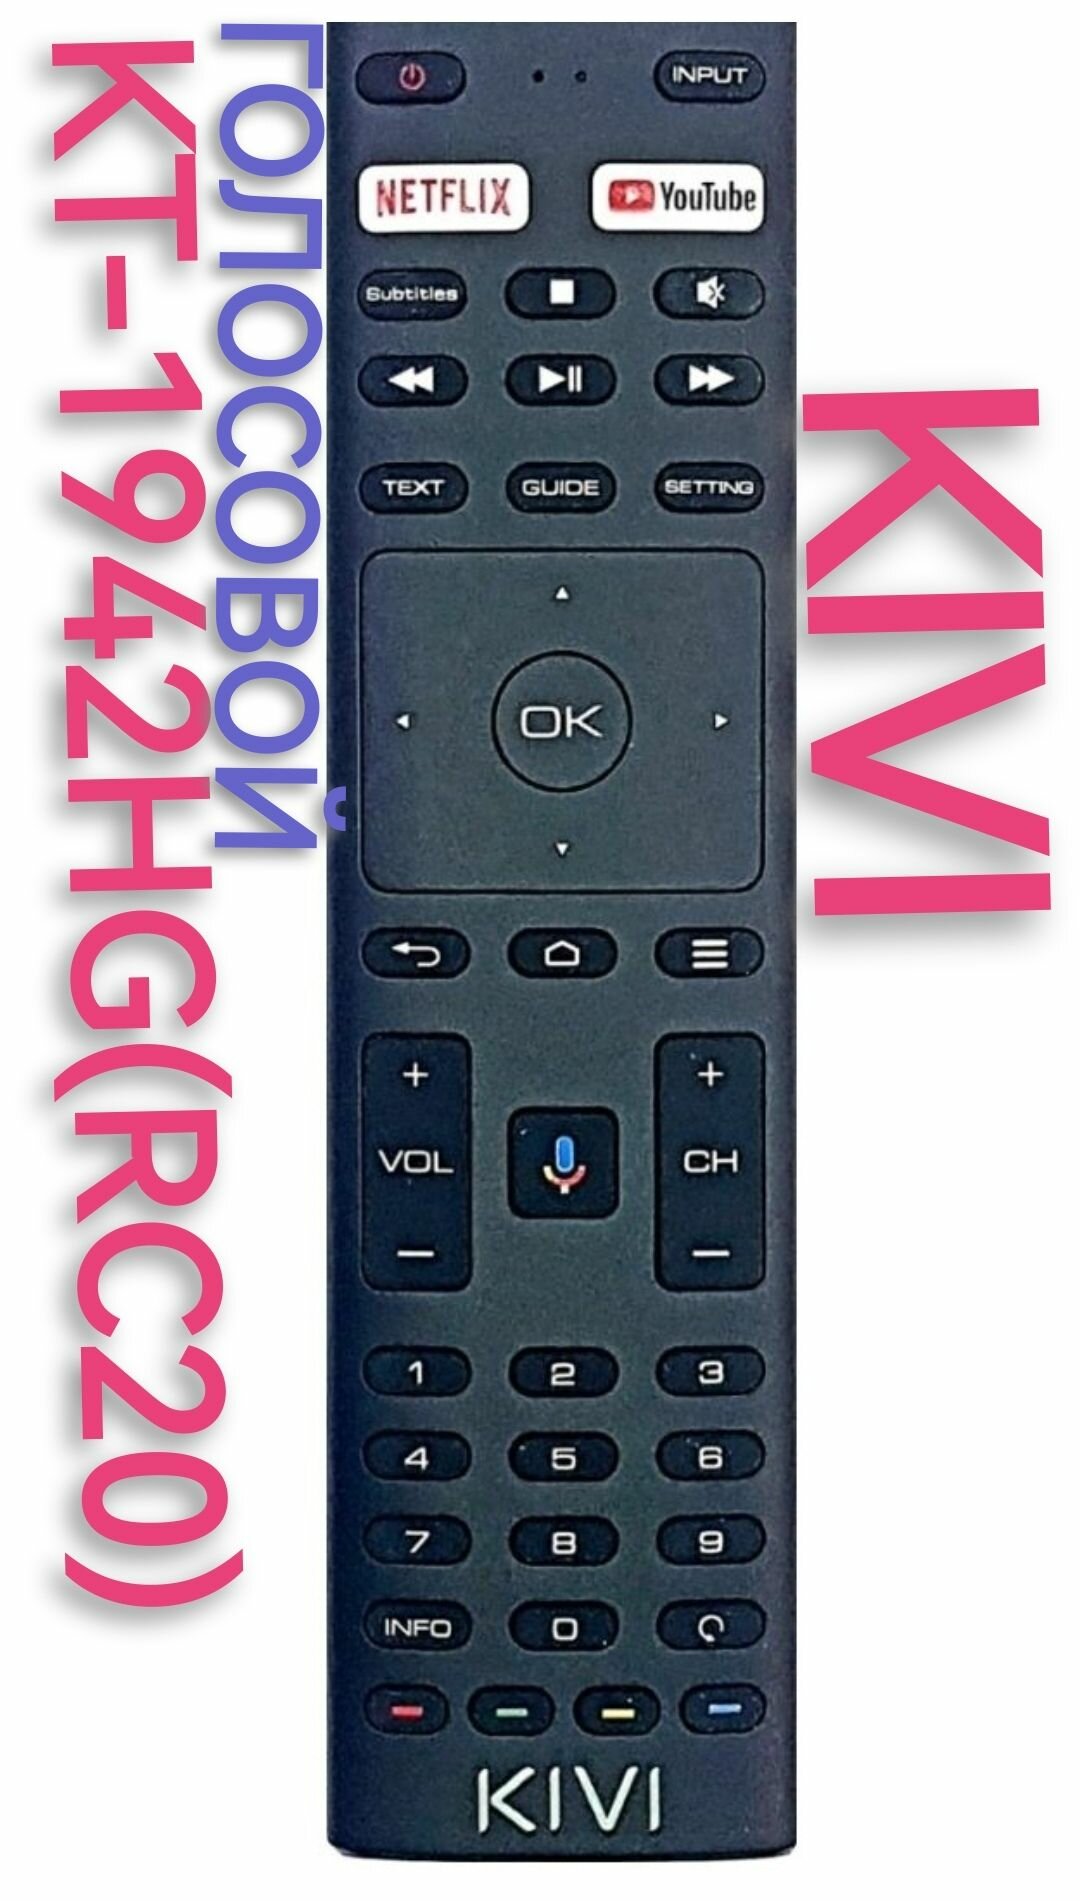 Голосовой пульт для KIVI KT1942-HG (RC-20) телевизора с функциями YouTube Okko Netflix